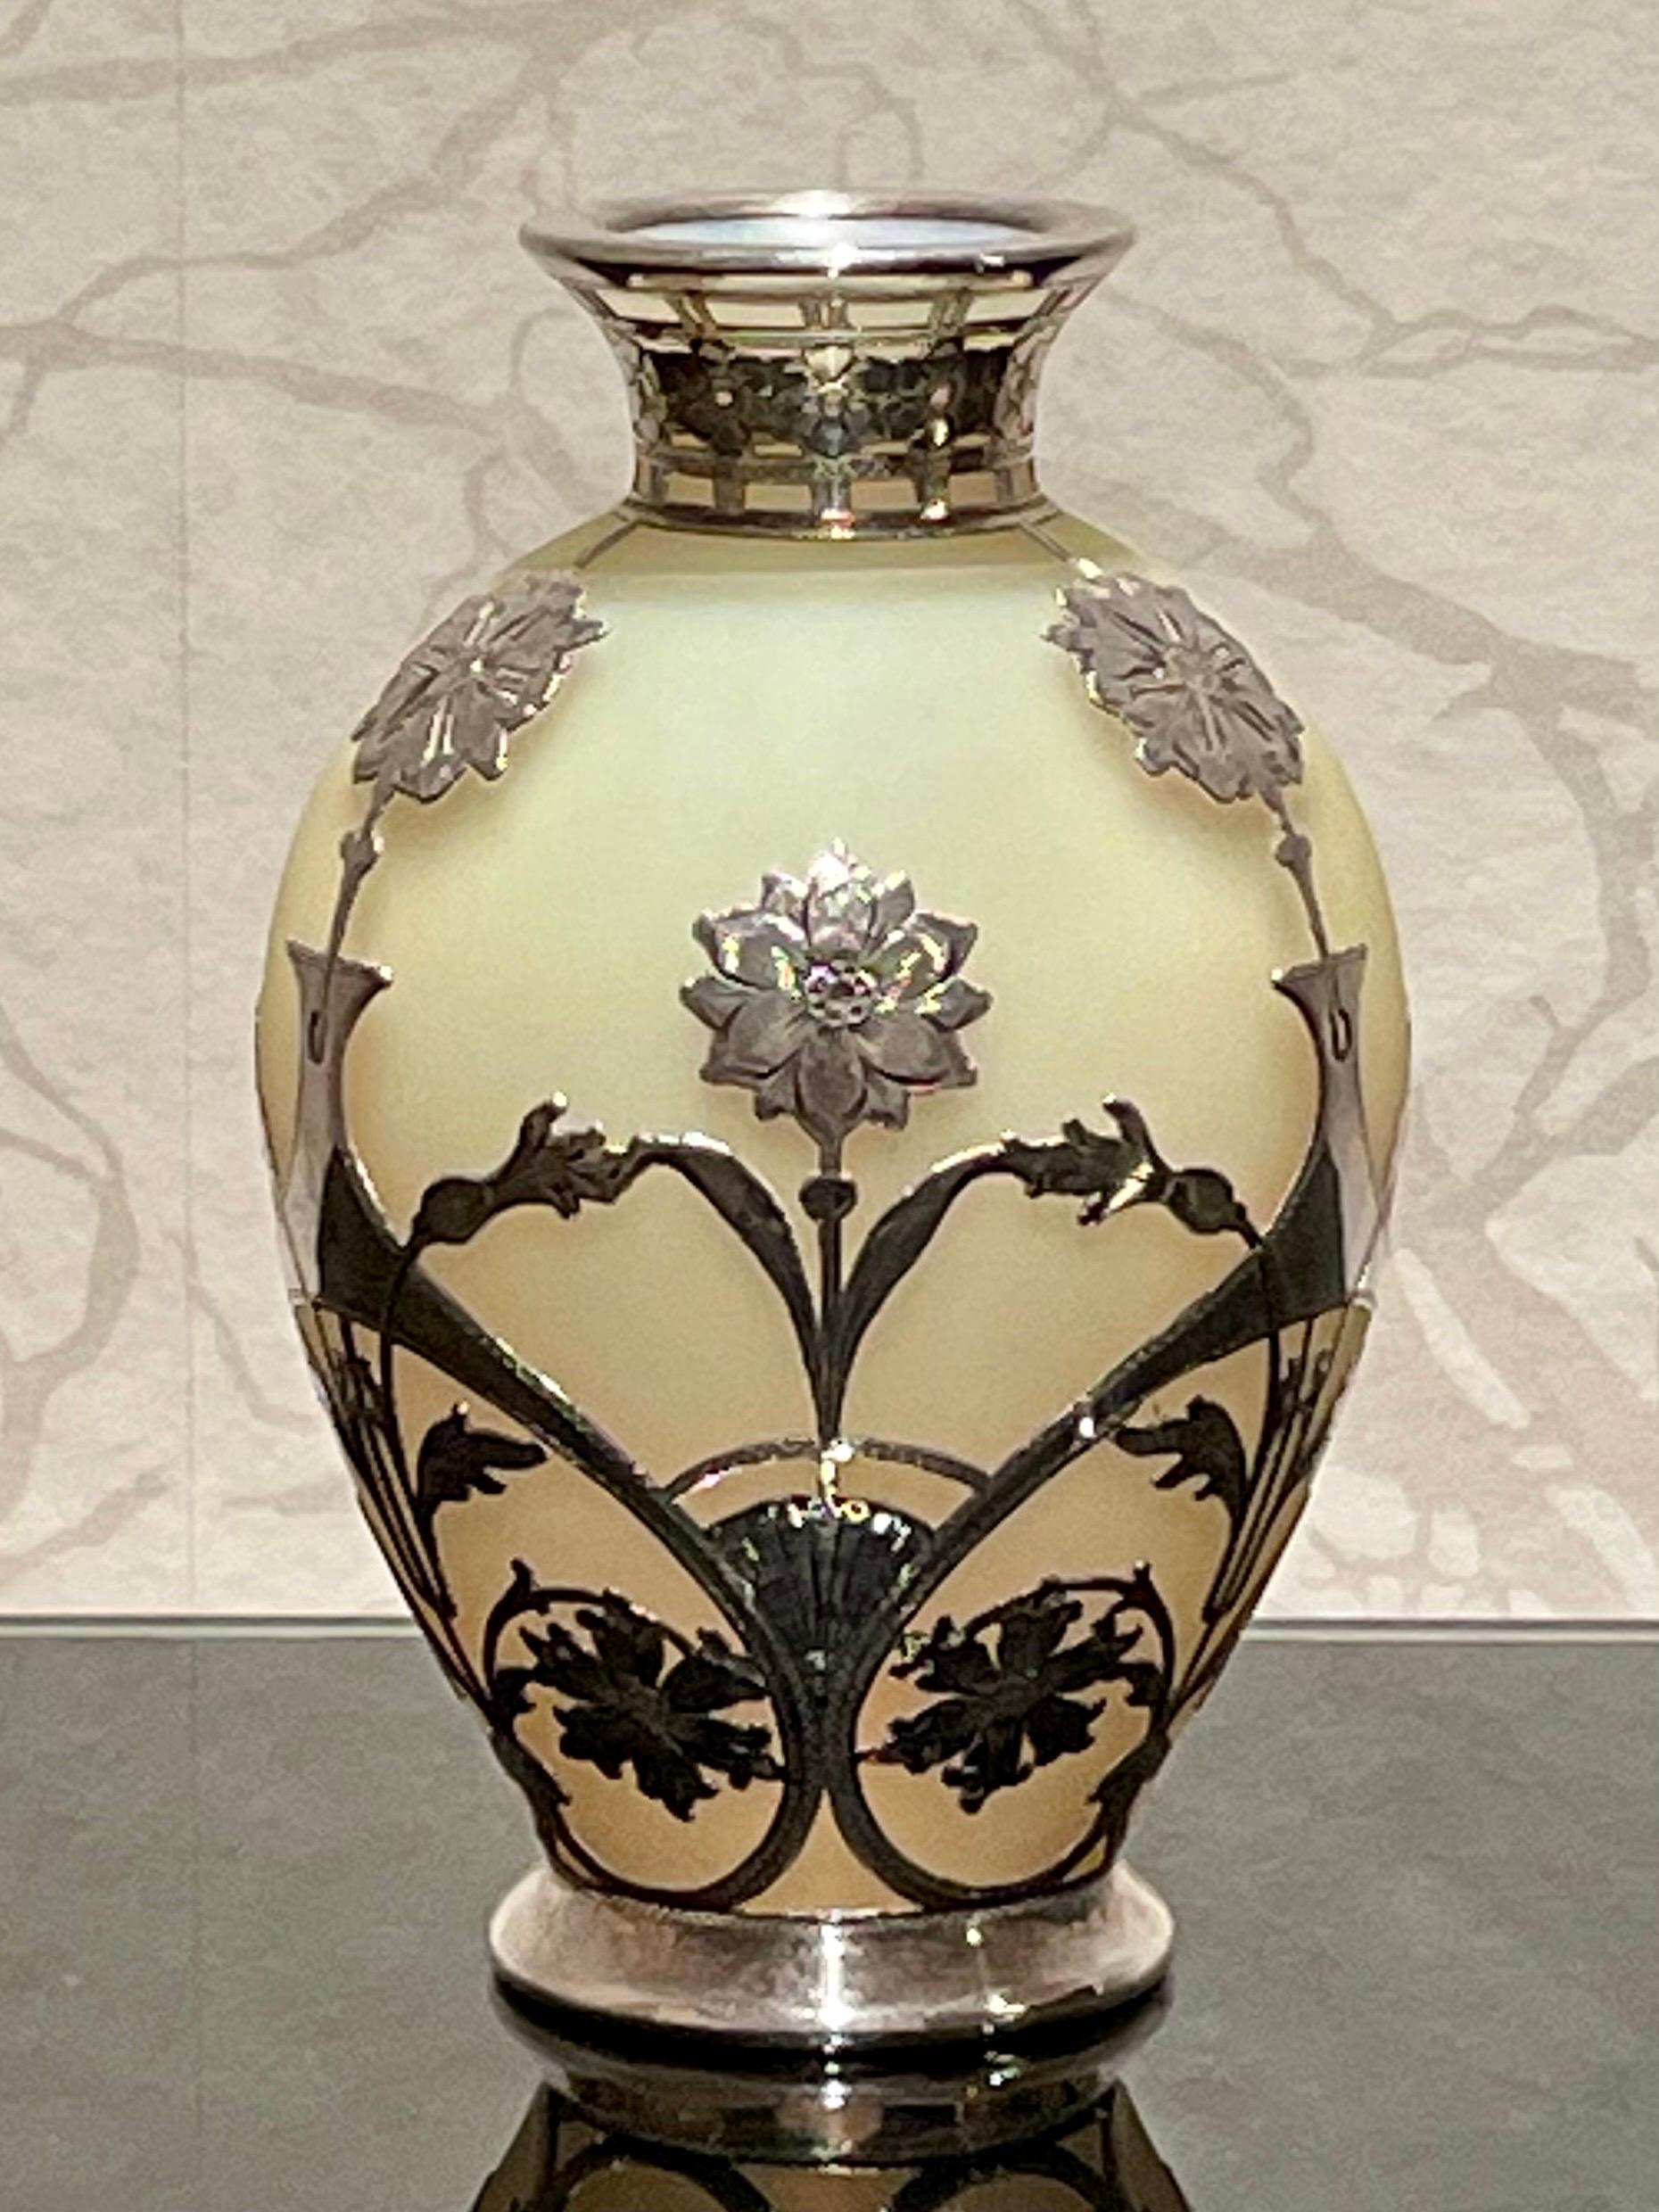 Il s'agit d'un vase Art-Nouveau bohème des années 1900 en verre uranium recouvert d'argent, à ne pas confondre avec des pièces d'Up&Up. 

Pour que les choses soient claires dès le départ, Loetz n'a pas appliqué de métal ou d'argent sur son verre.